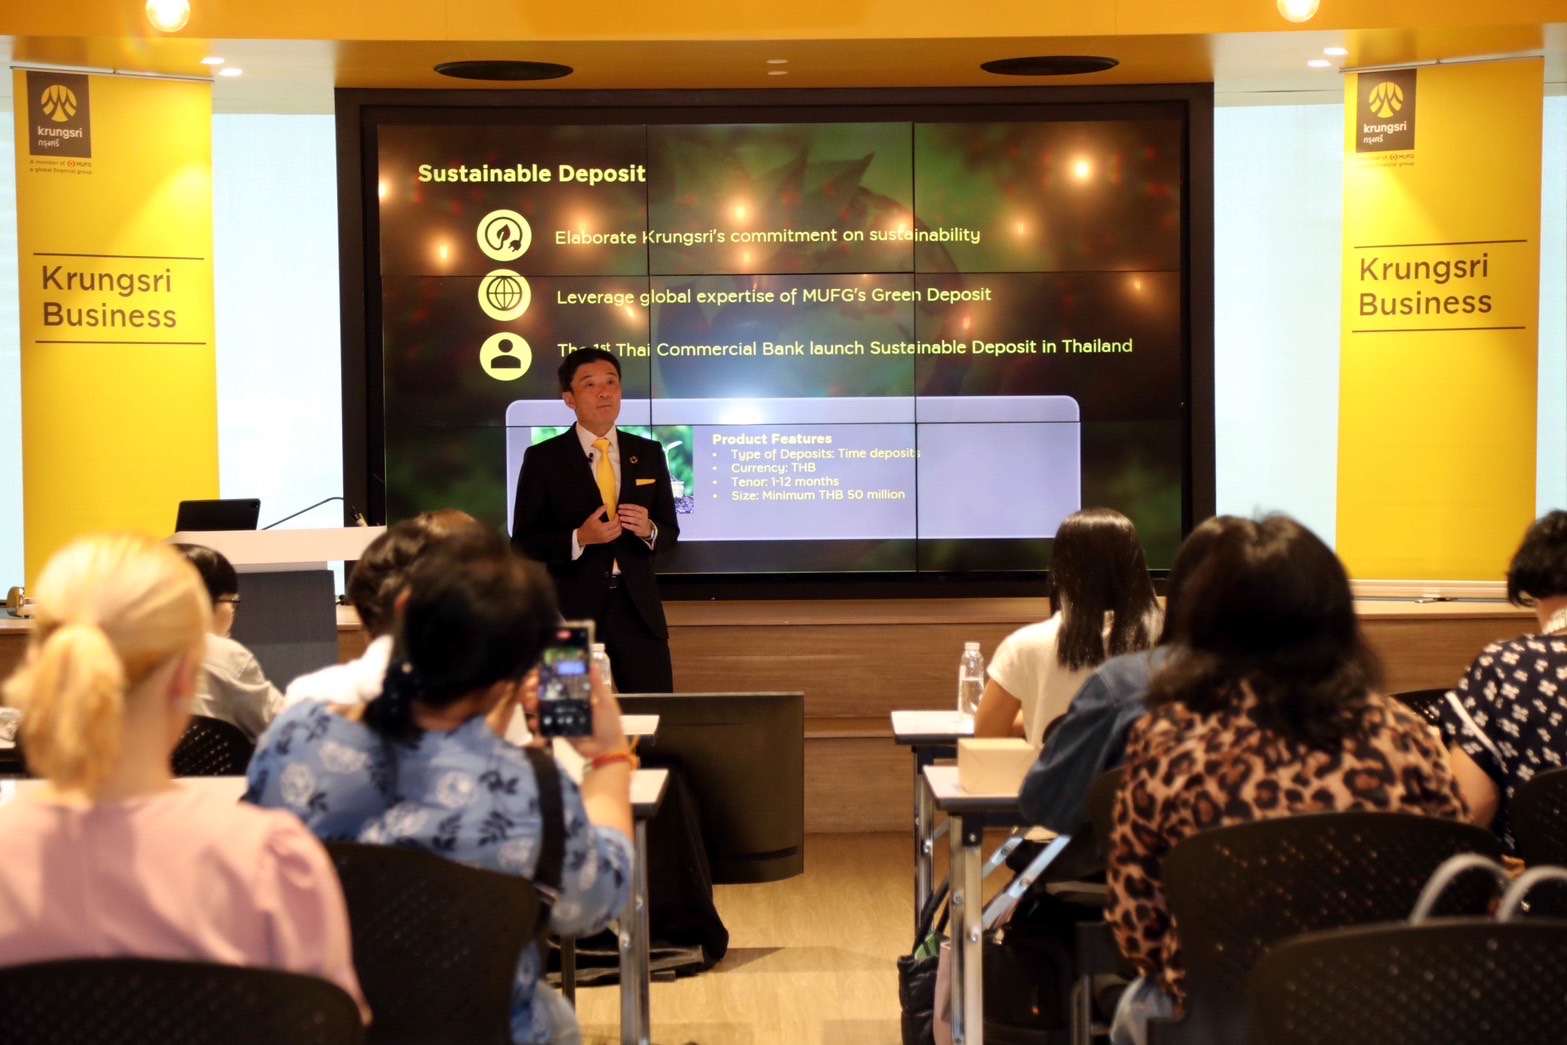 クルンスリ、日本の企業顧客と多国籍企業向けの戦略を進める – MCOT Thai News Agency